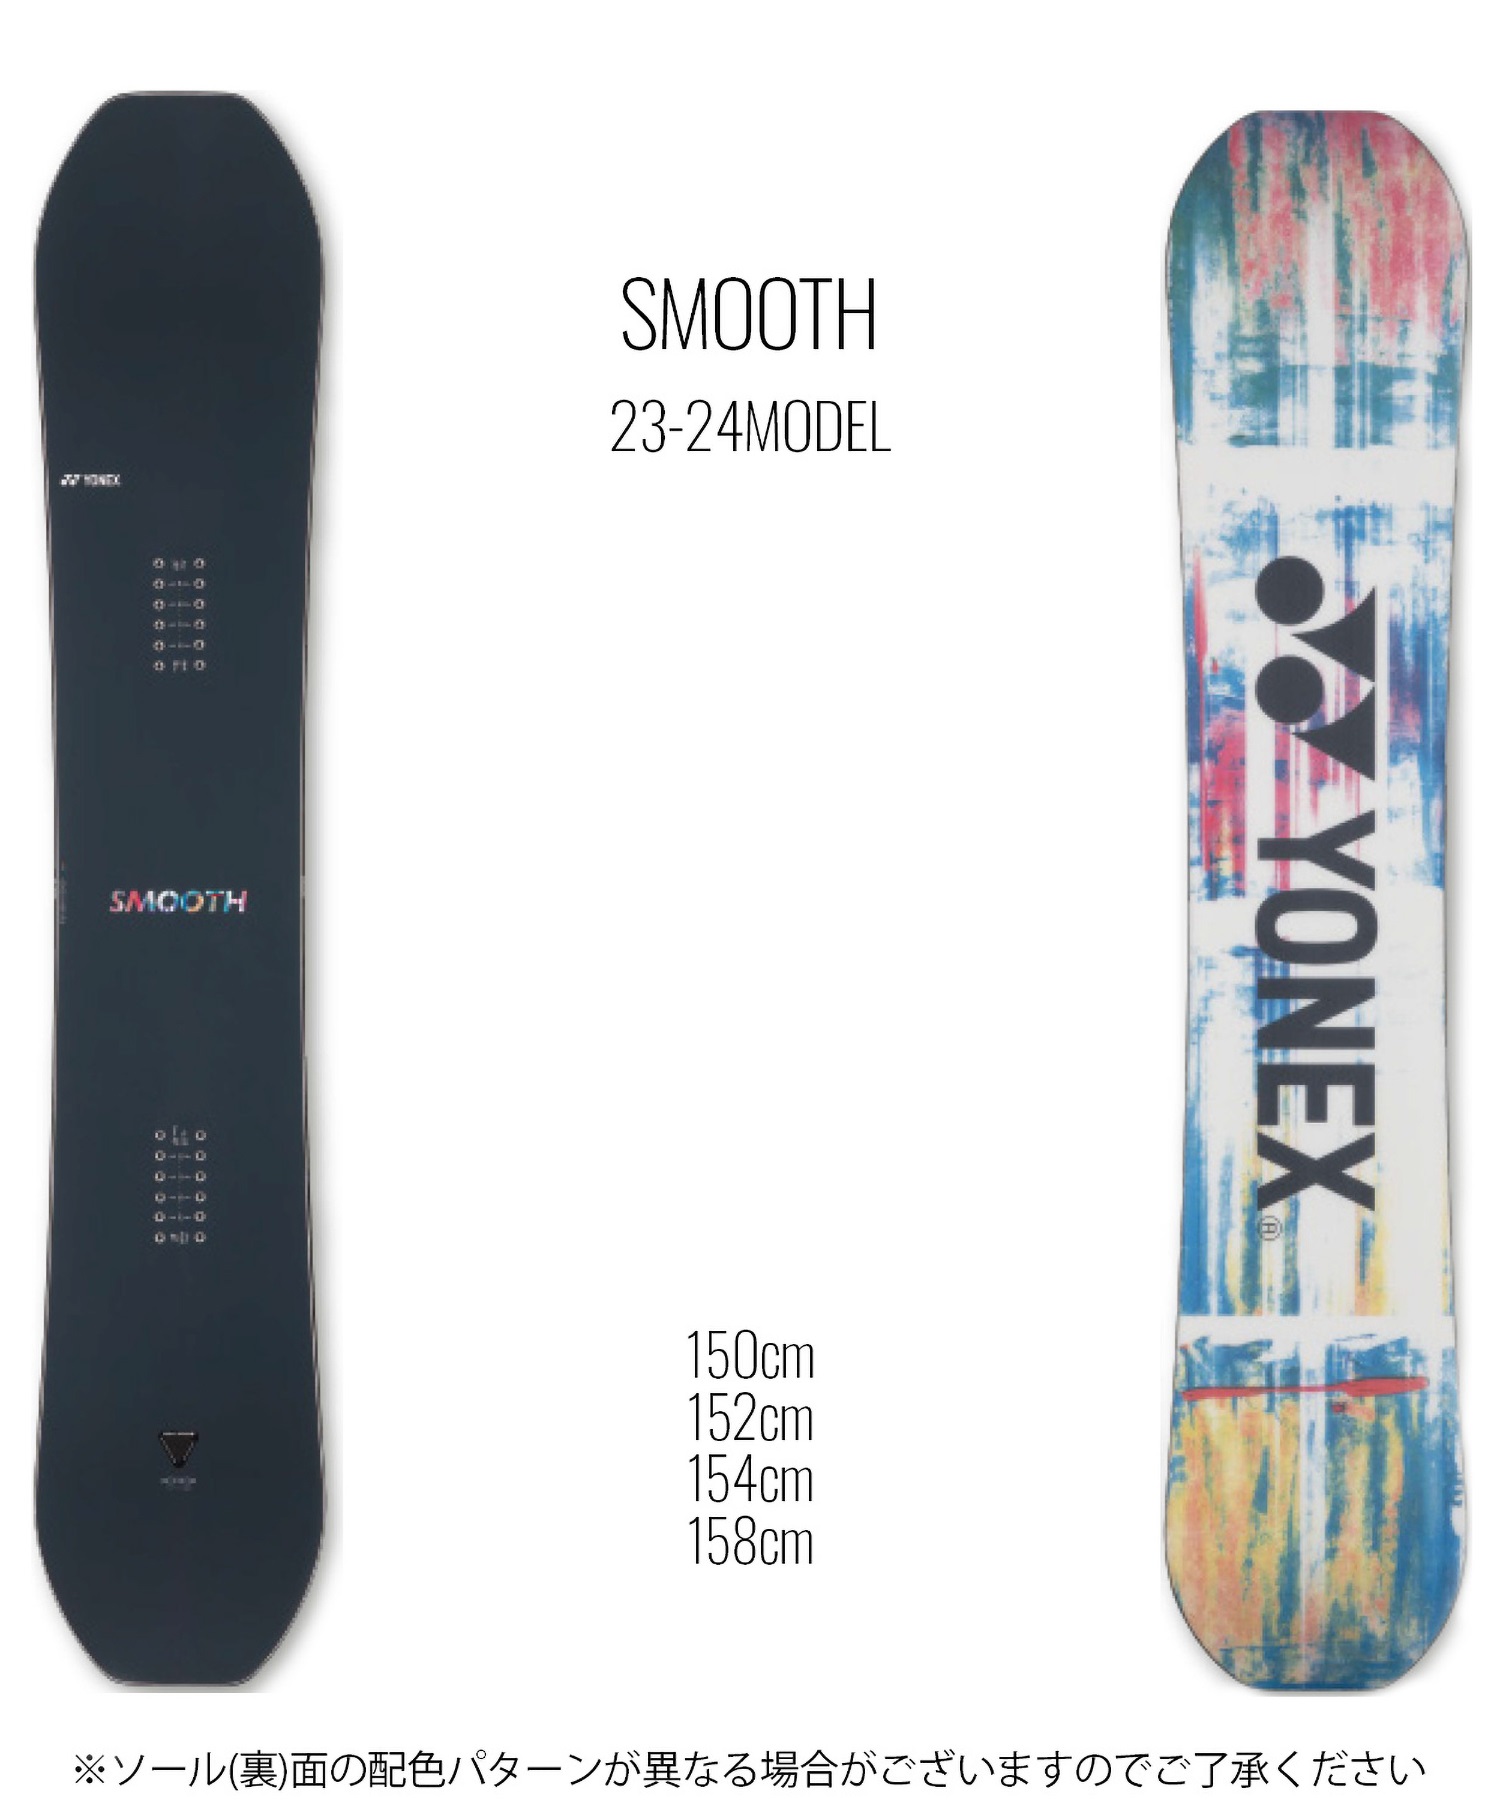 YONEX smooth 154cm - ボード